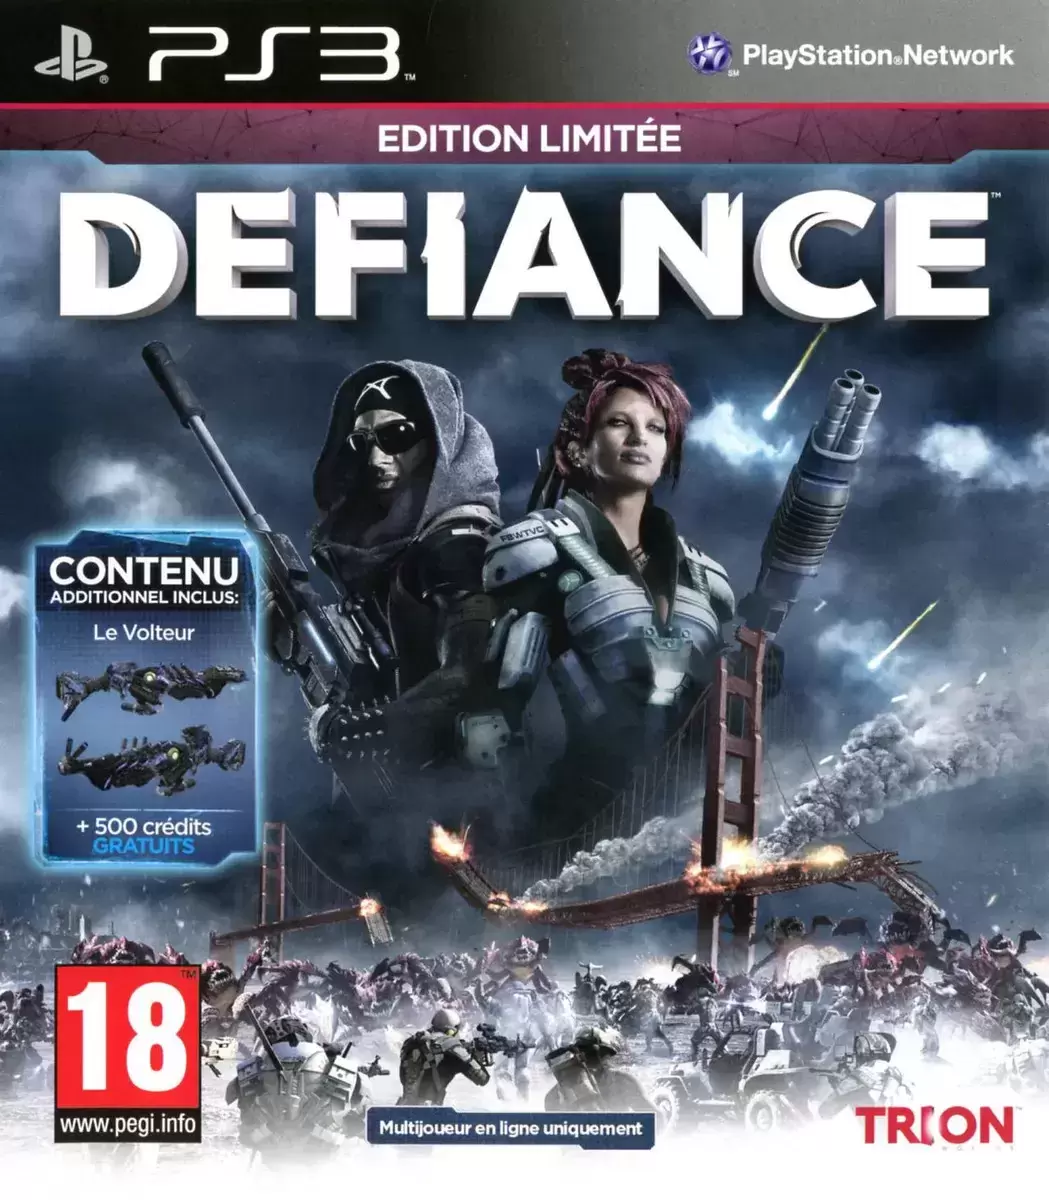 PS3 Games - Defiance Edition Limitée